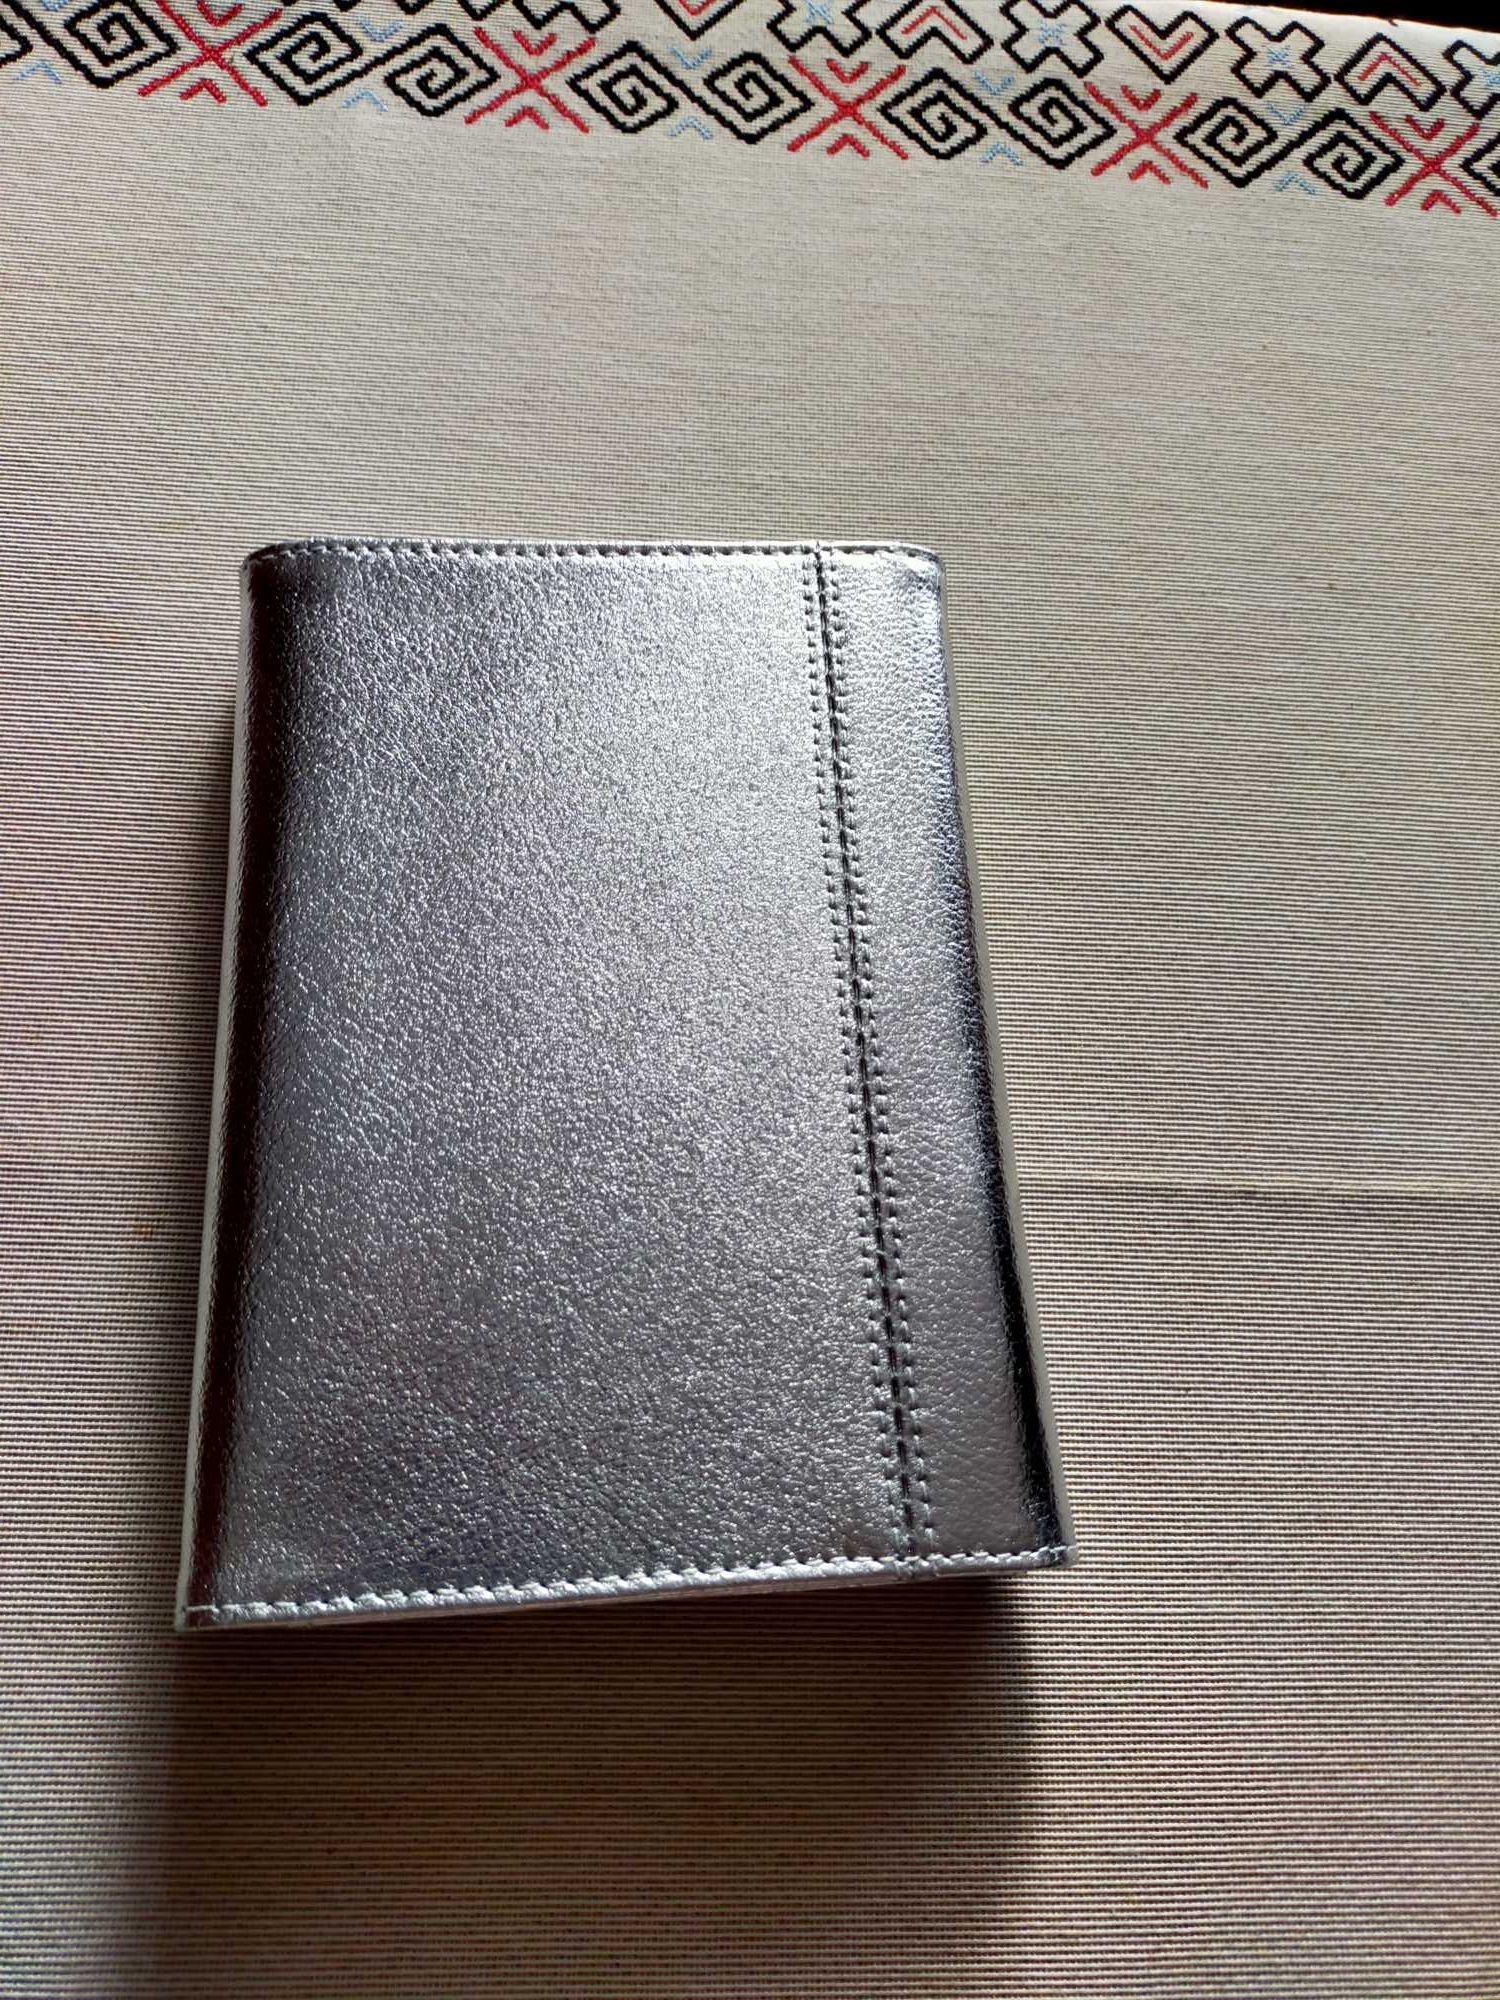 Органайзер (кошелек+блокнот), натуральная кожа, фирма Kikki.k, Швеция.